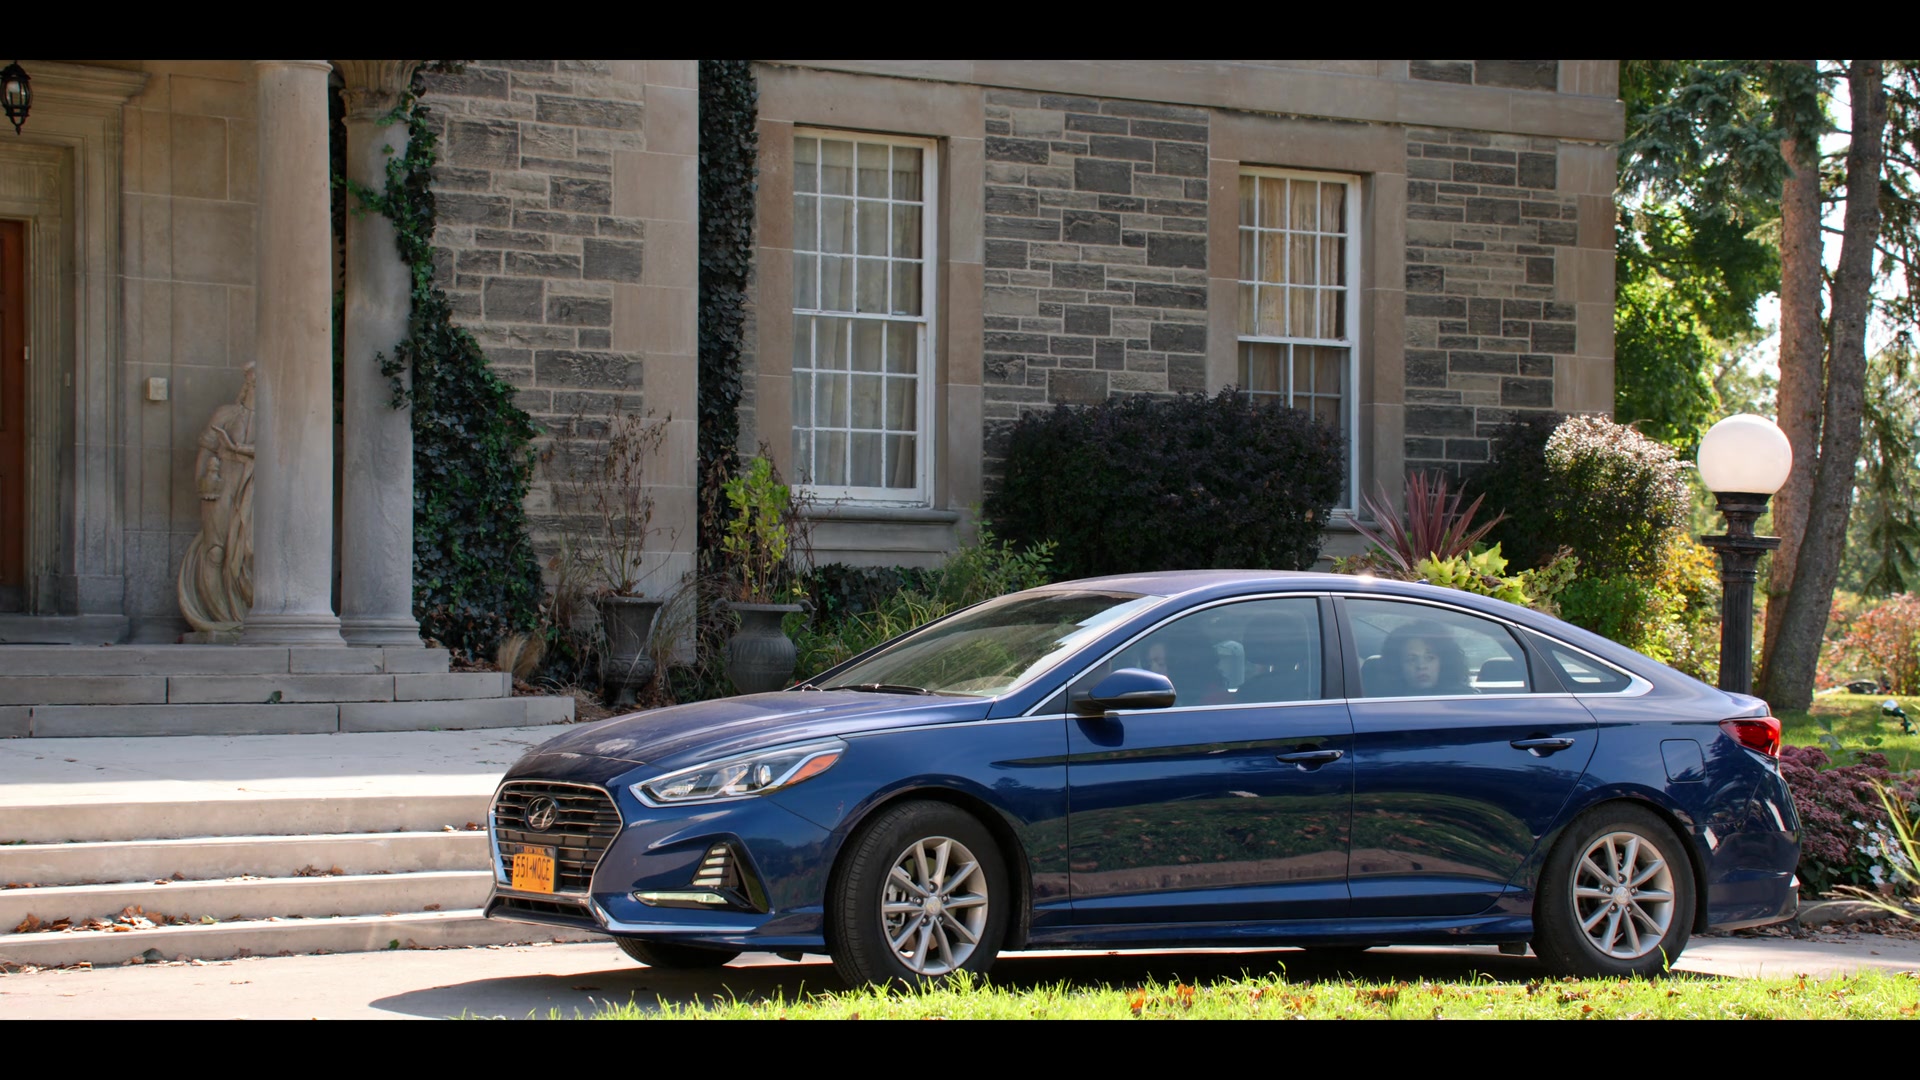 Hyundai Sonata Blue Car in October Faction Season 1 Episode 1 